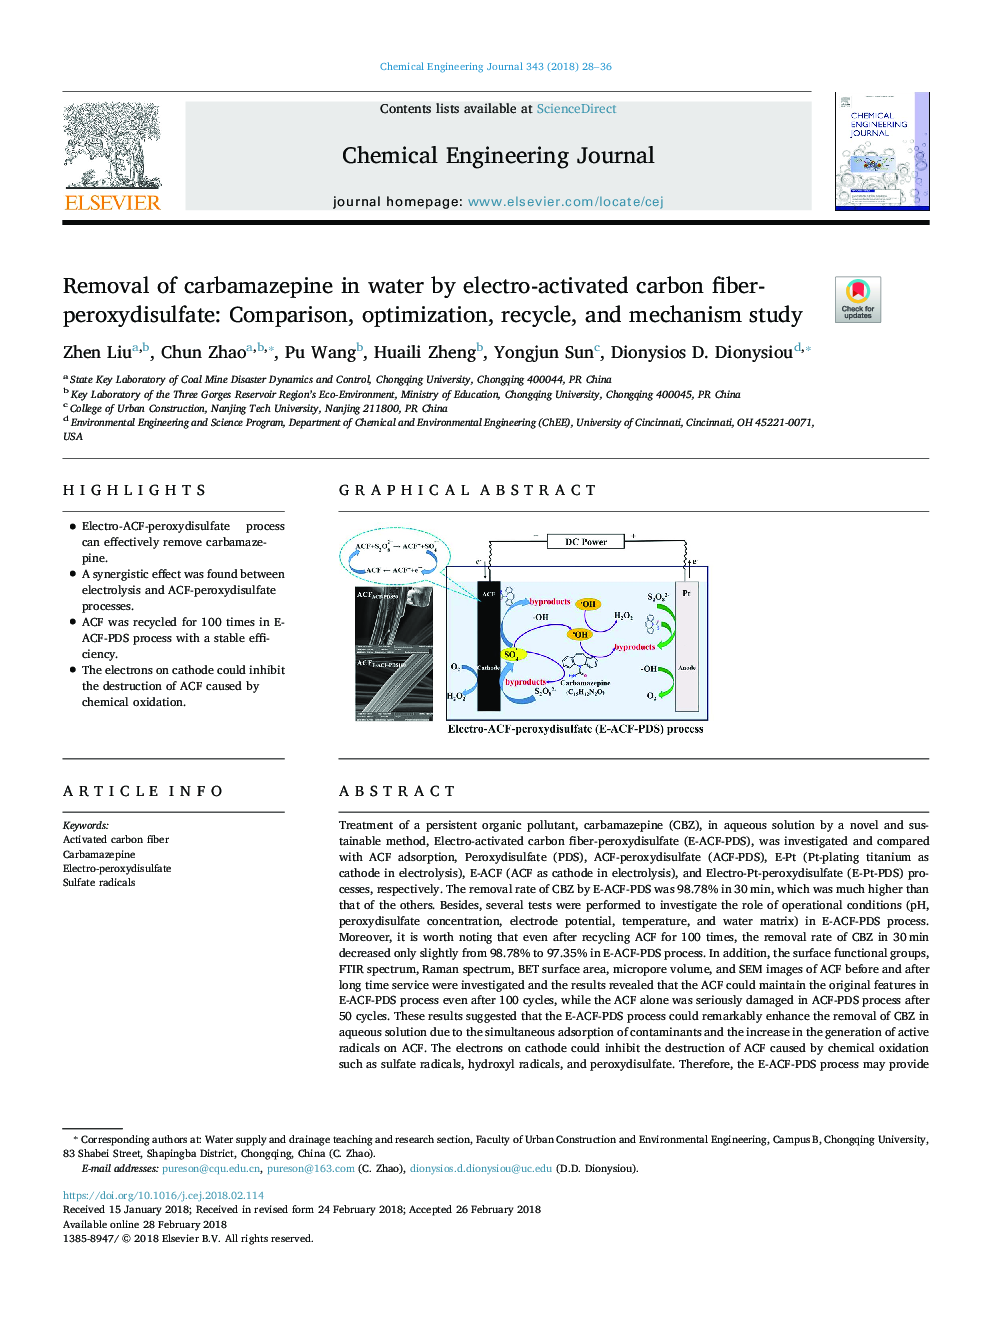 حذف کاربامازپین در آب توسط الیاف پراکسید سولفات کربن الکترونی: مطالعه مقایسه، بهینه سازی، بازیافت و مکانیزم 